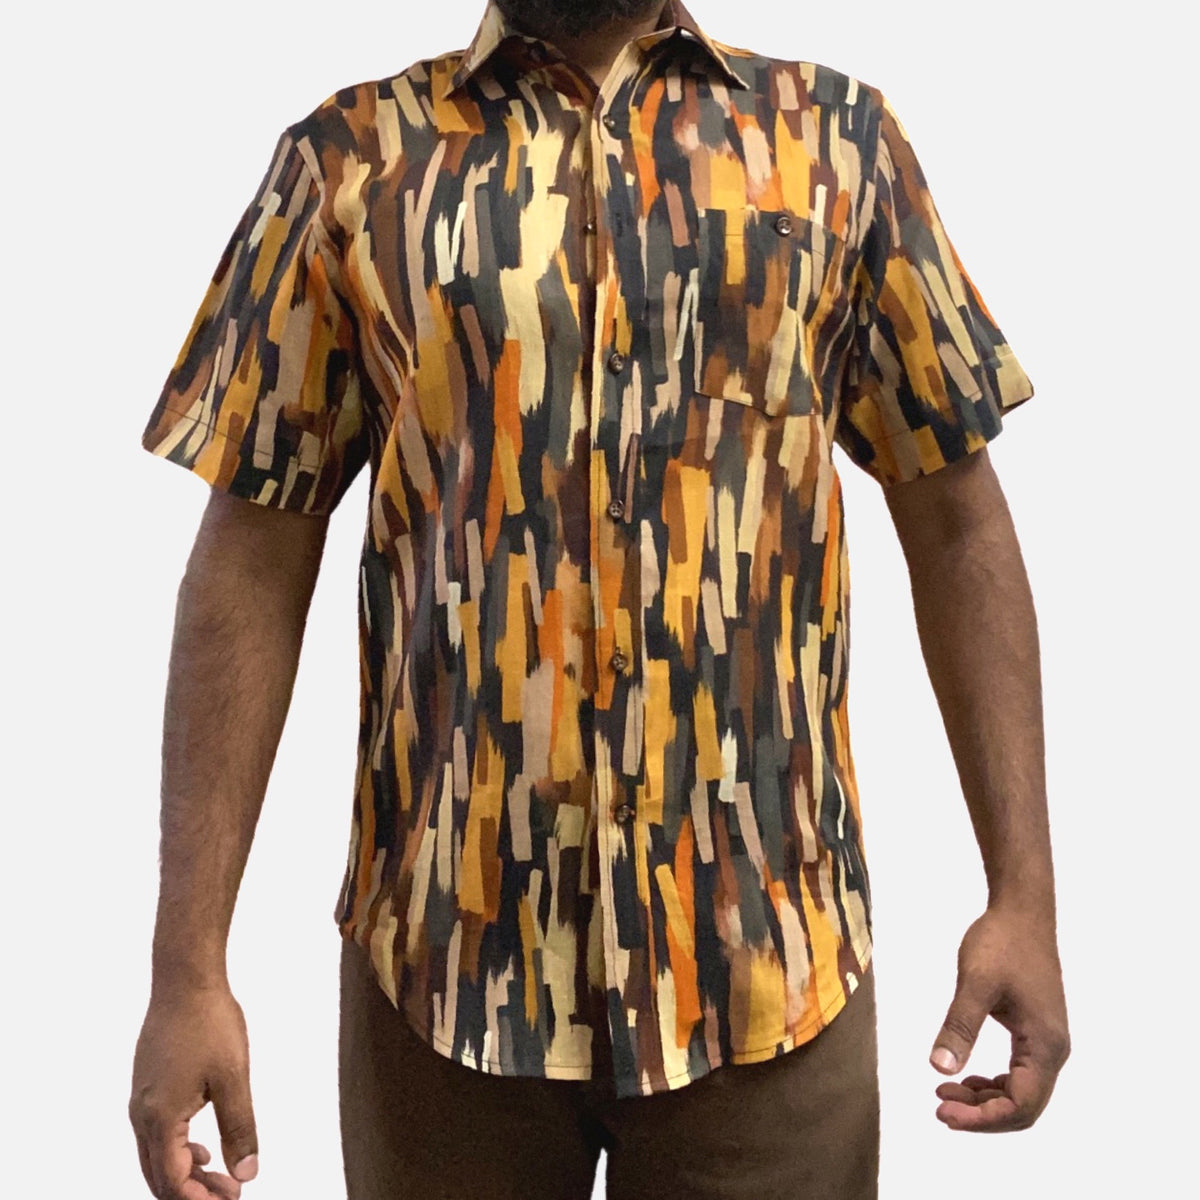 Mens linen shirt by Inserch Earth